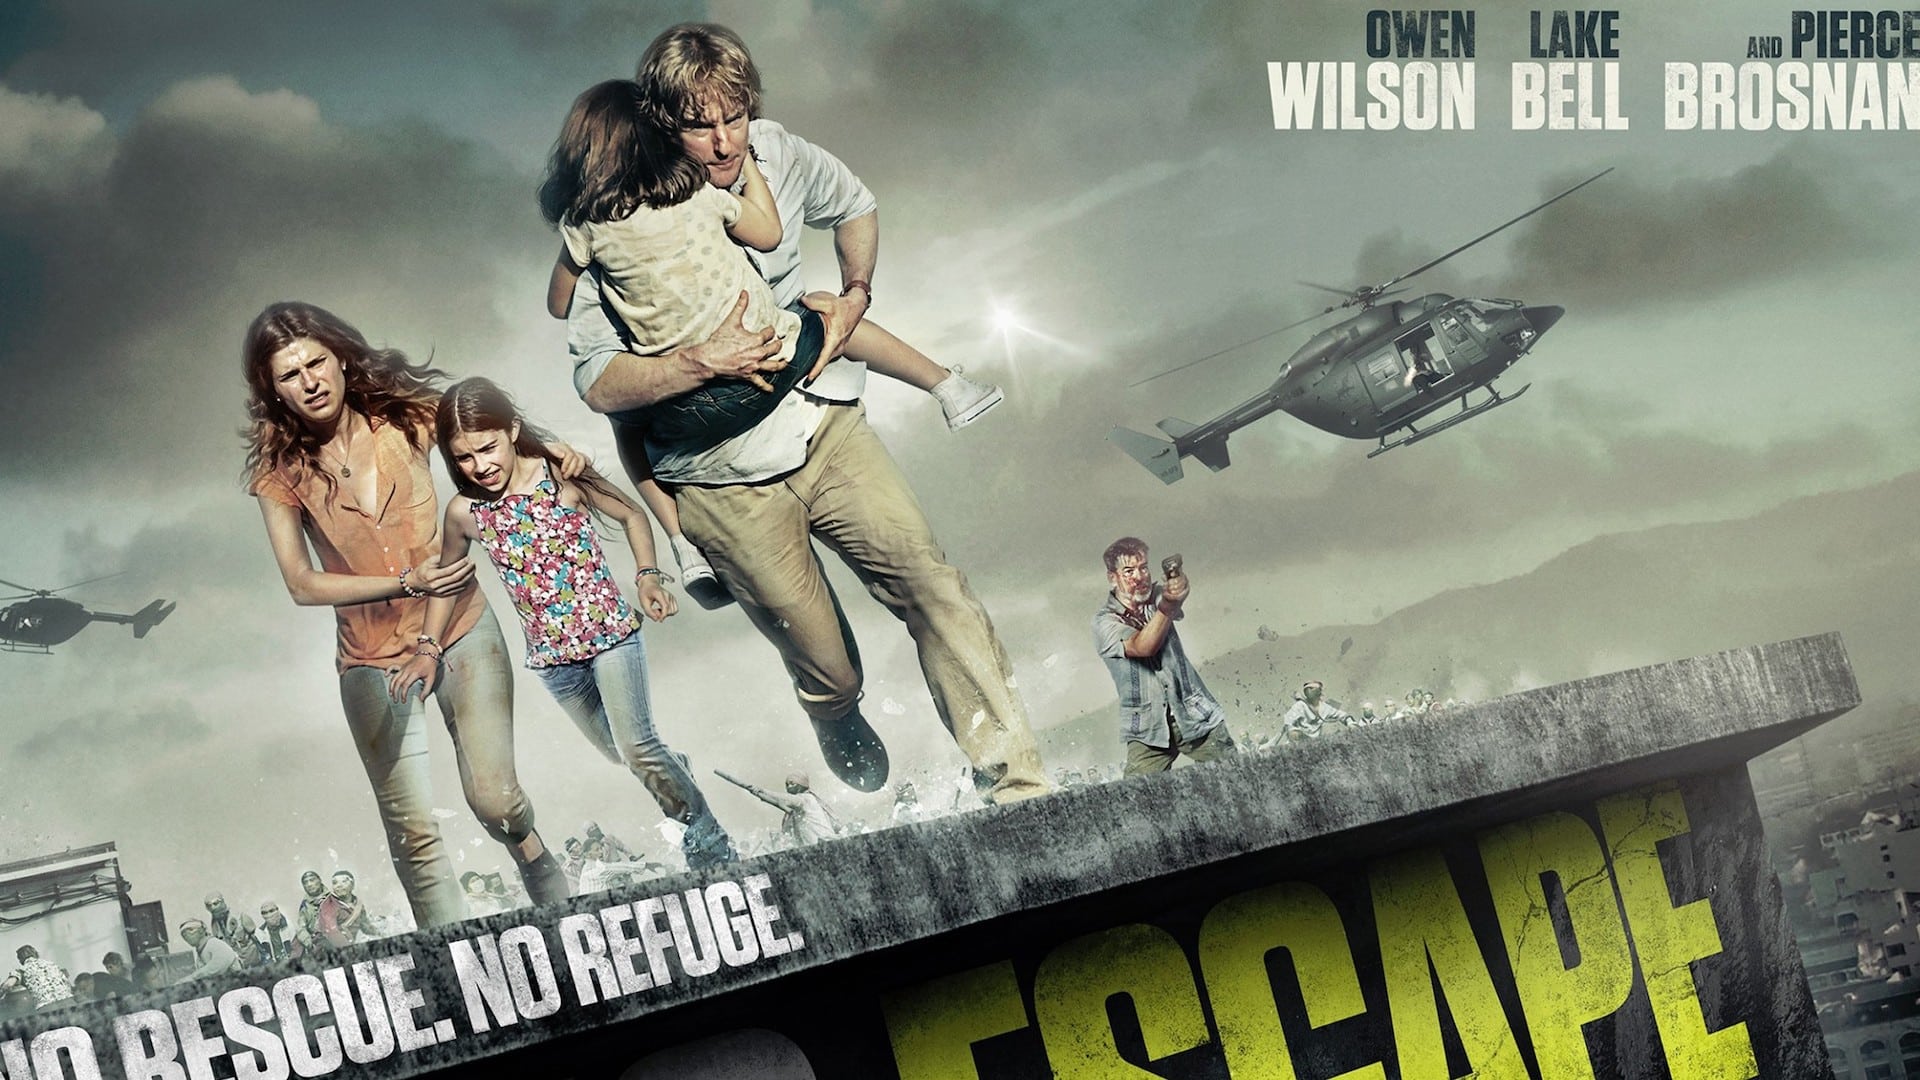 No Escape – Colpo di stato: il film con Owen Wilson è una storia vera?